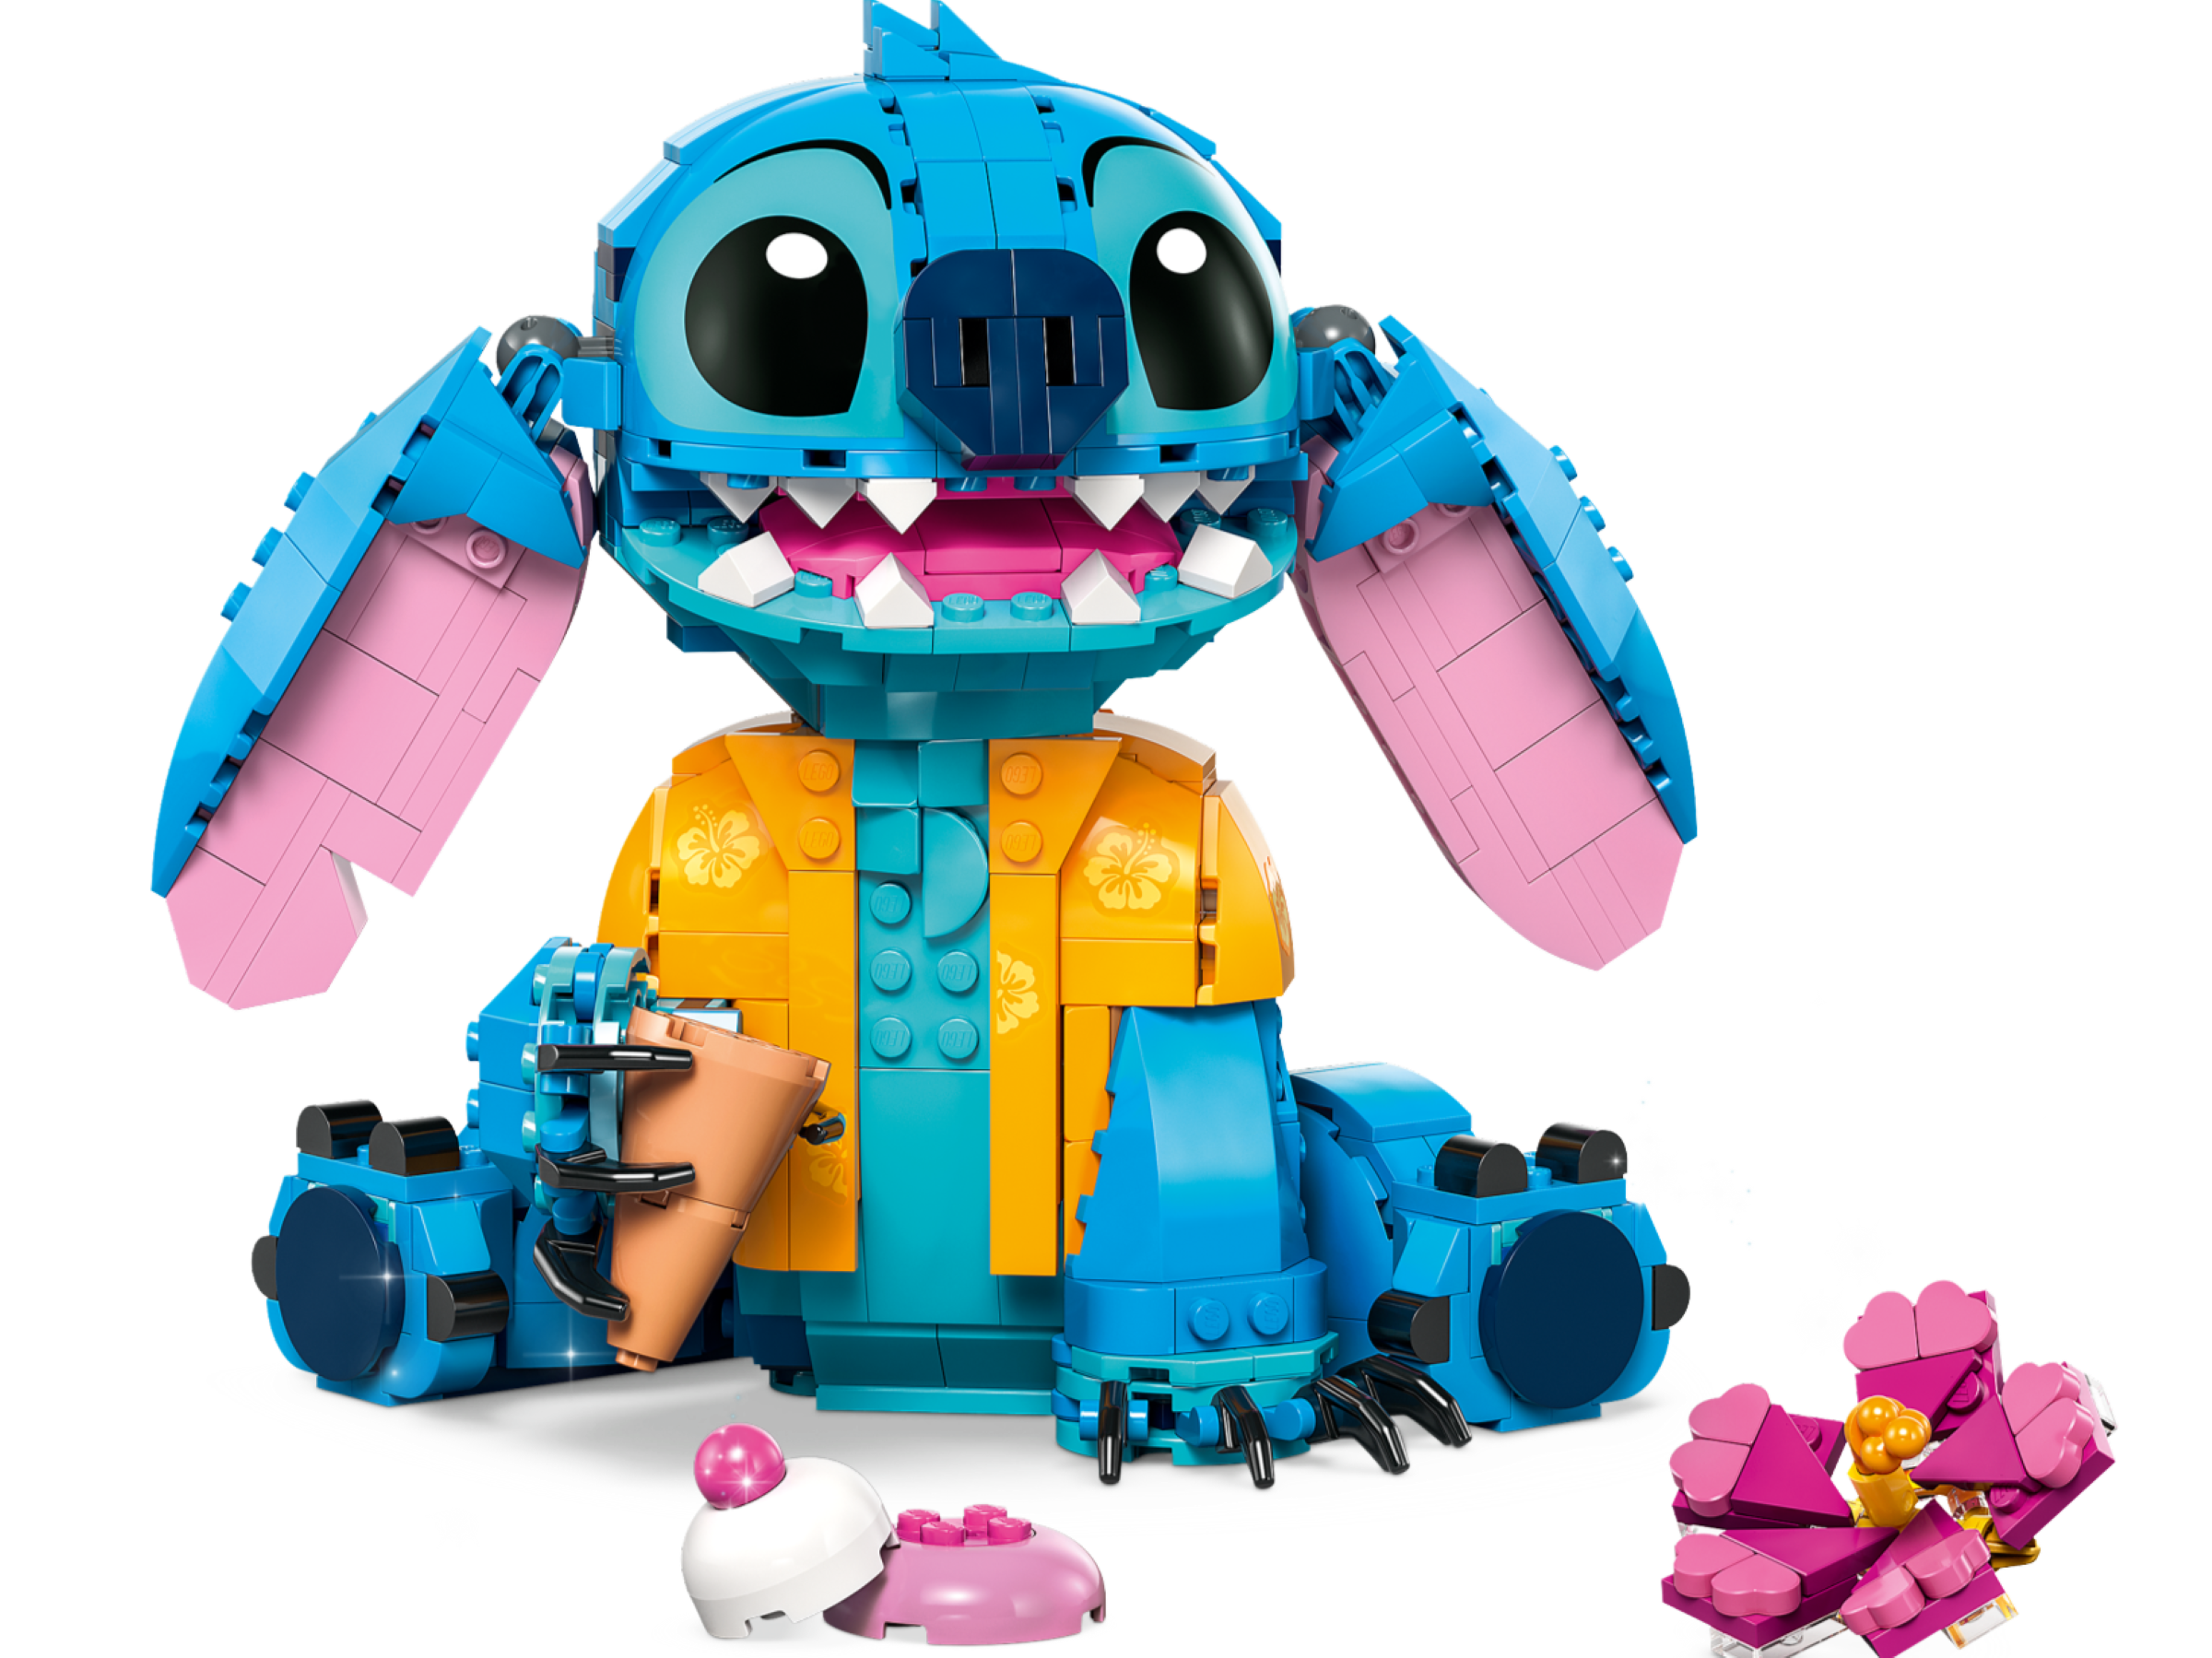 LEAKED! LEGO Disney Buildable Stitch LEGO Set! #lego #legoleak #legodi, lego  stitch